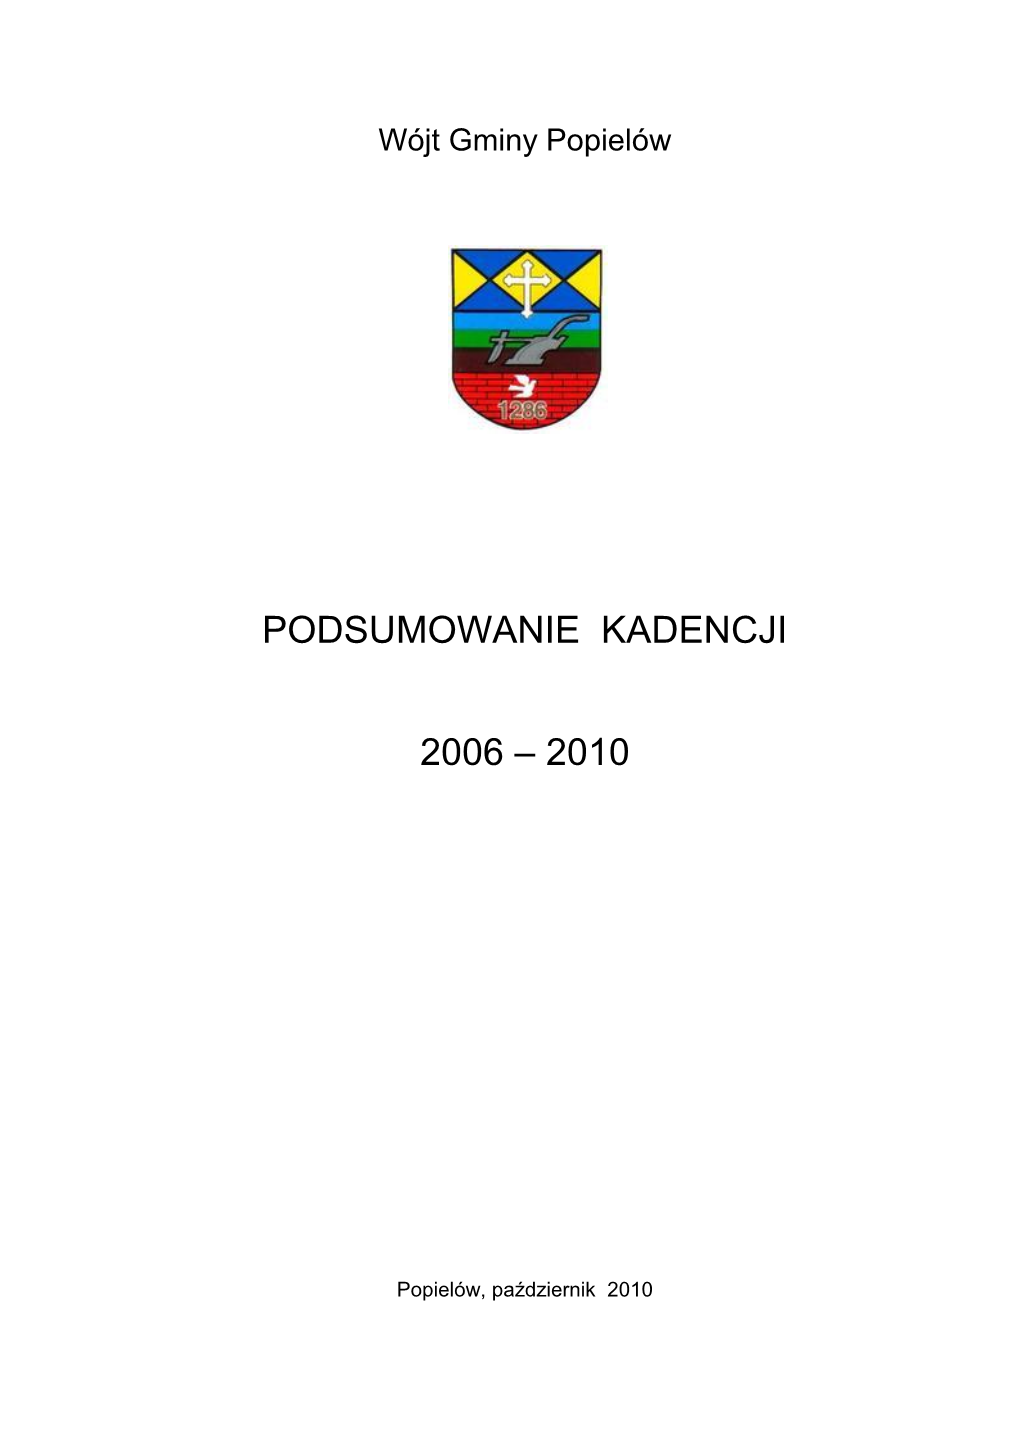 Podsumowanie Kadencji 2006 – 2010